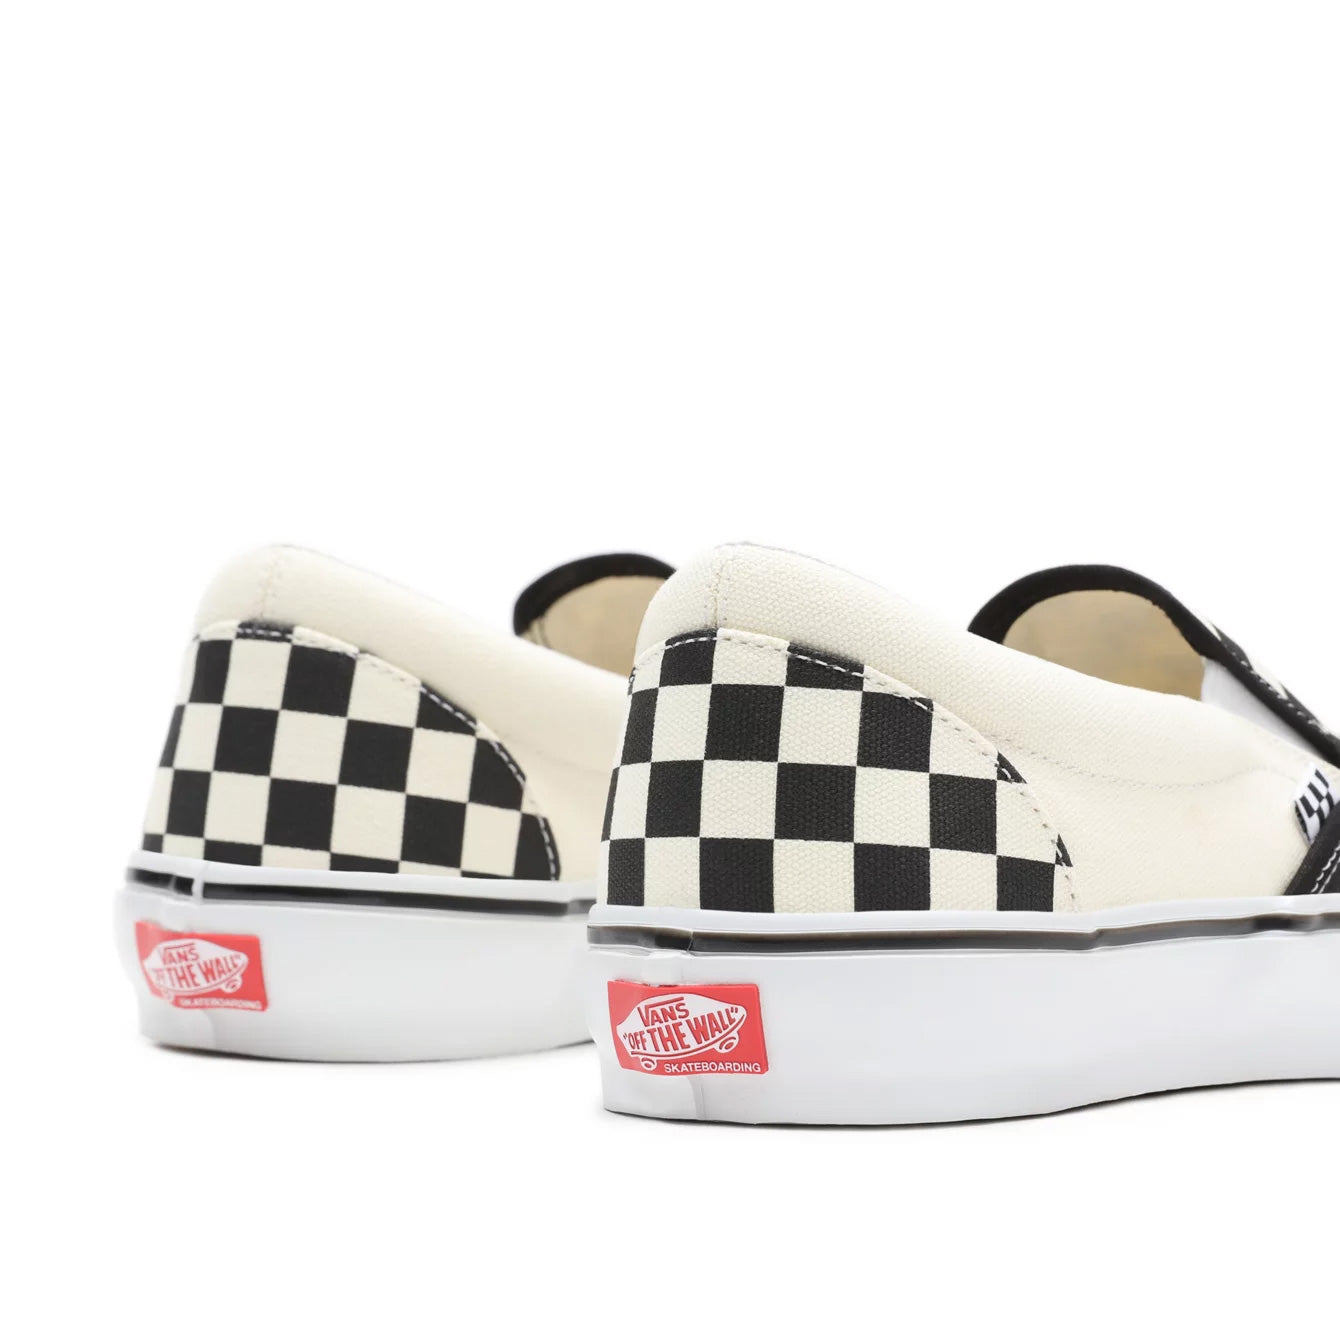 Vans Skate Slip On Shoes - Black/White Checkerboard